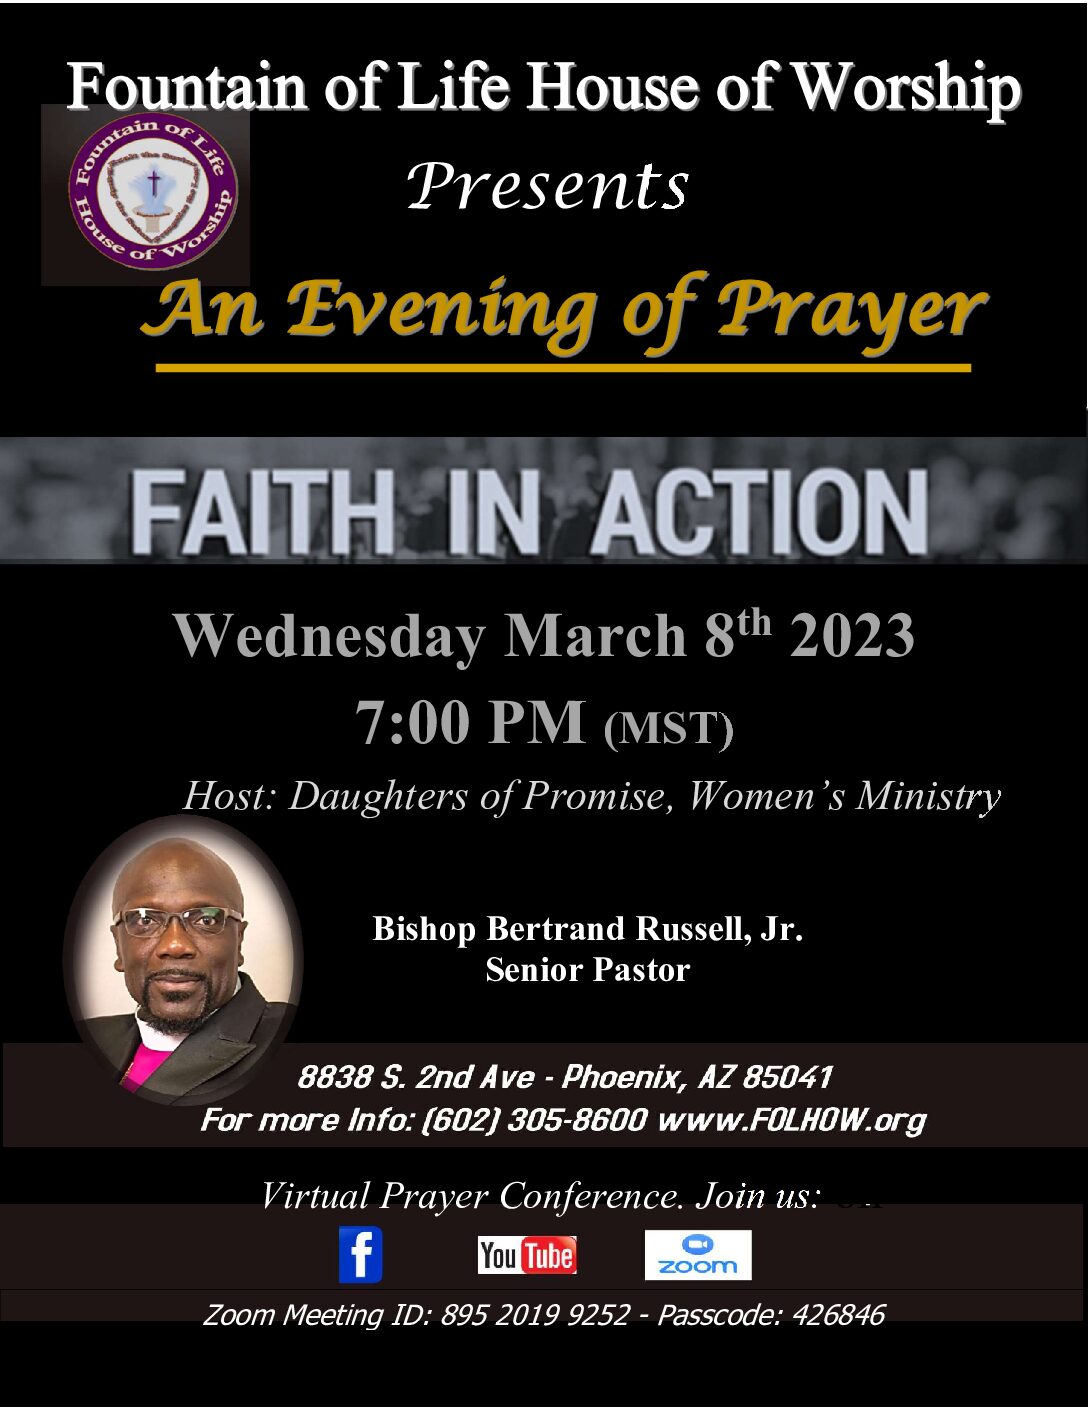 An Evening of Prayer - March 8